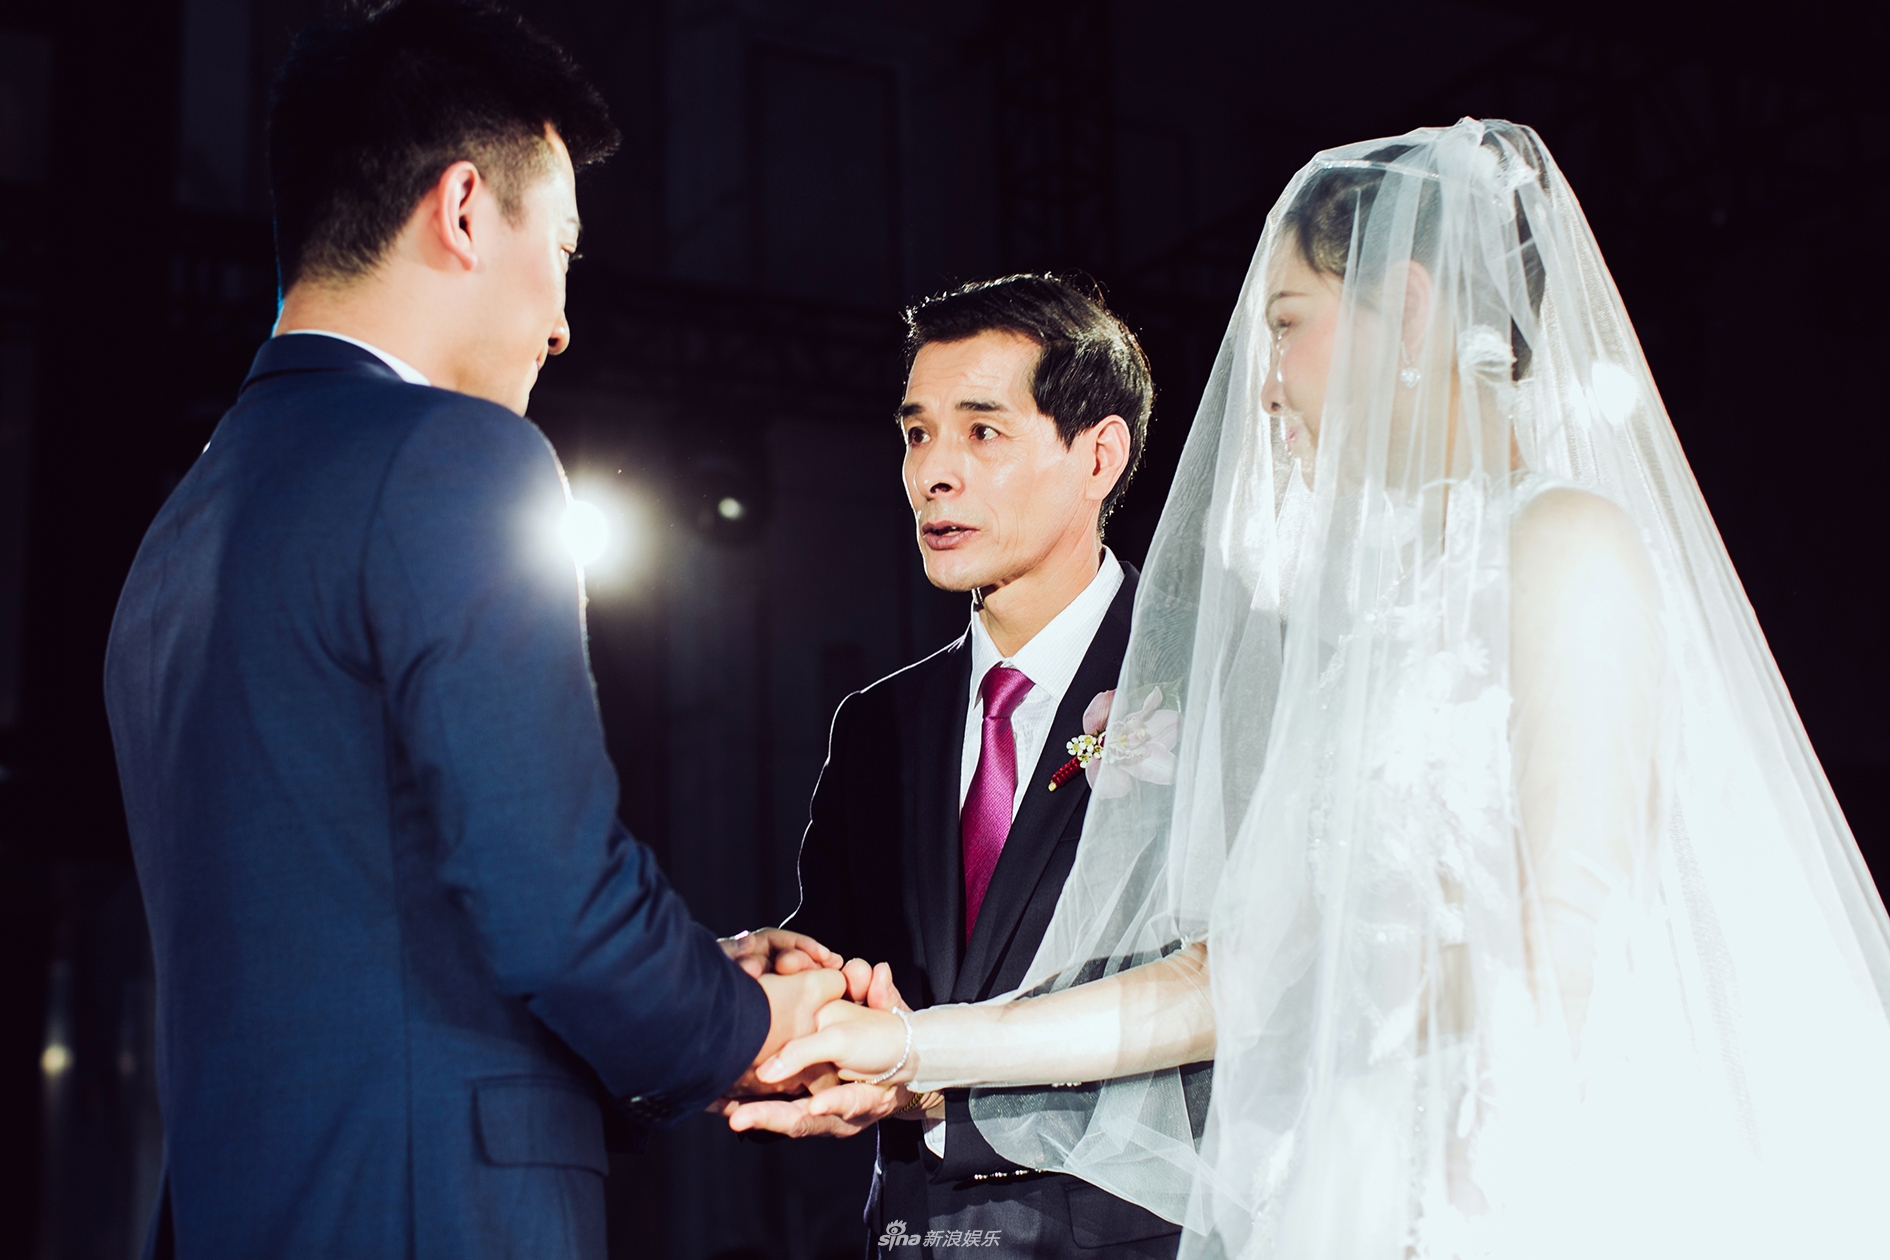 新浪娱乐讯 10月13日跳水女皇吴敏霞和老公张效诚在上海再次举办婚礼